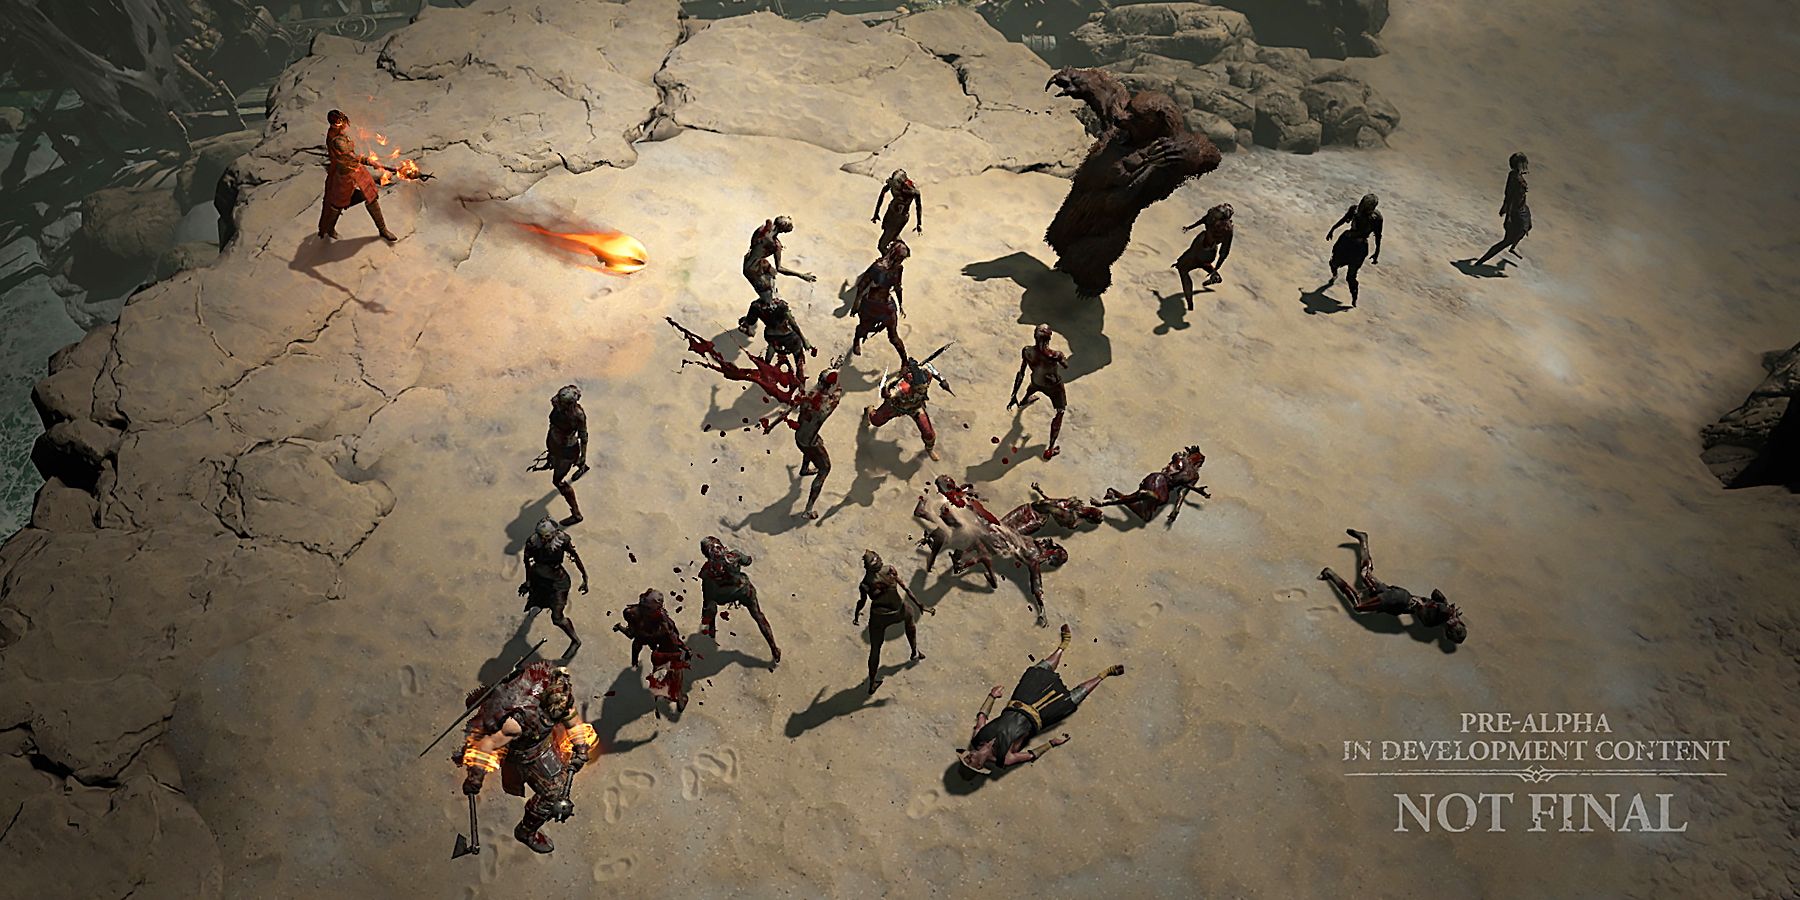 Diablo 4 Gameplay Has Leaked Online